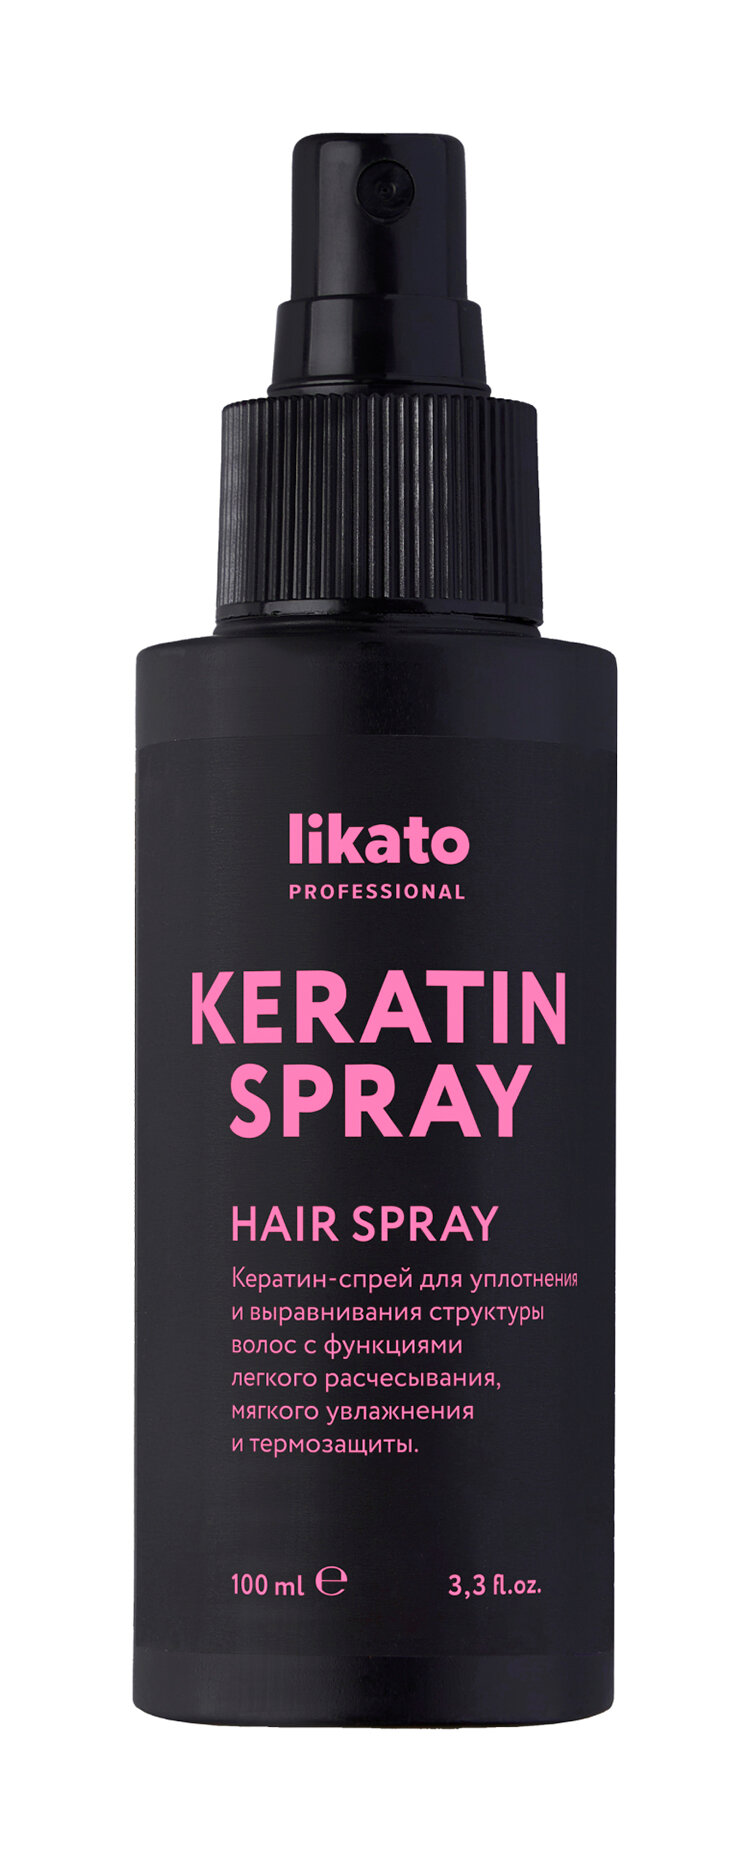 Термозащитный спрей для облегчения расчесывания волос с кератином Likato Professional Keraless Keratin Hair Spray /100 мл/гр.